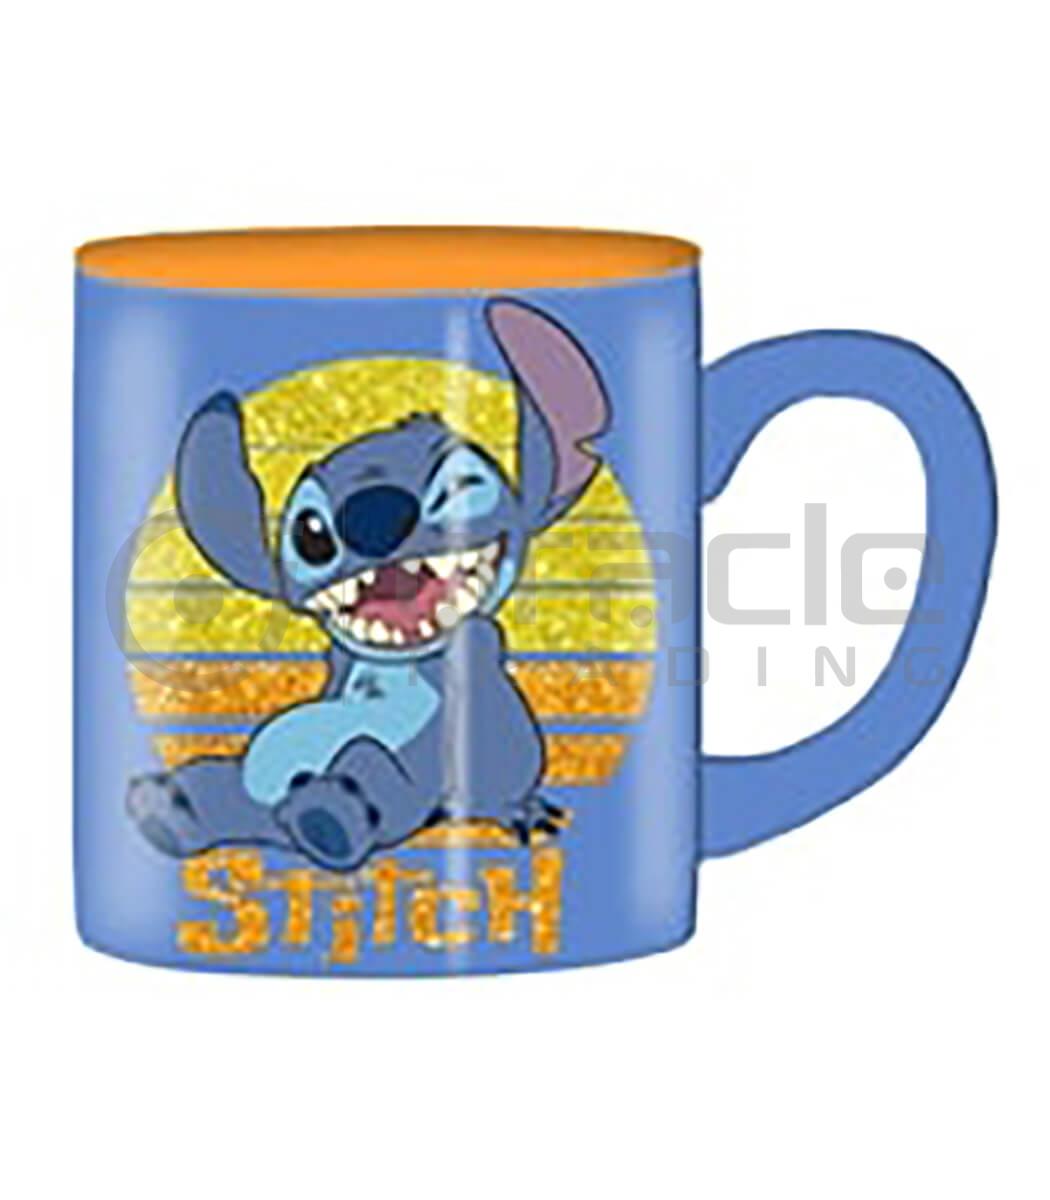 Lilo & Stitch Jumbo Mug - Sunset (Glitter)